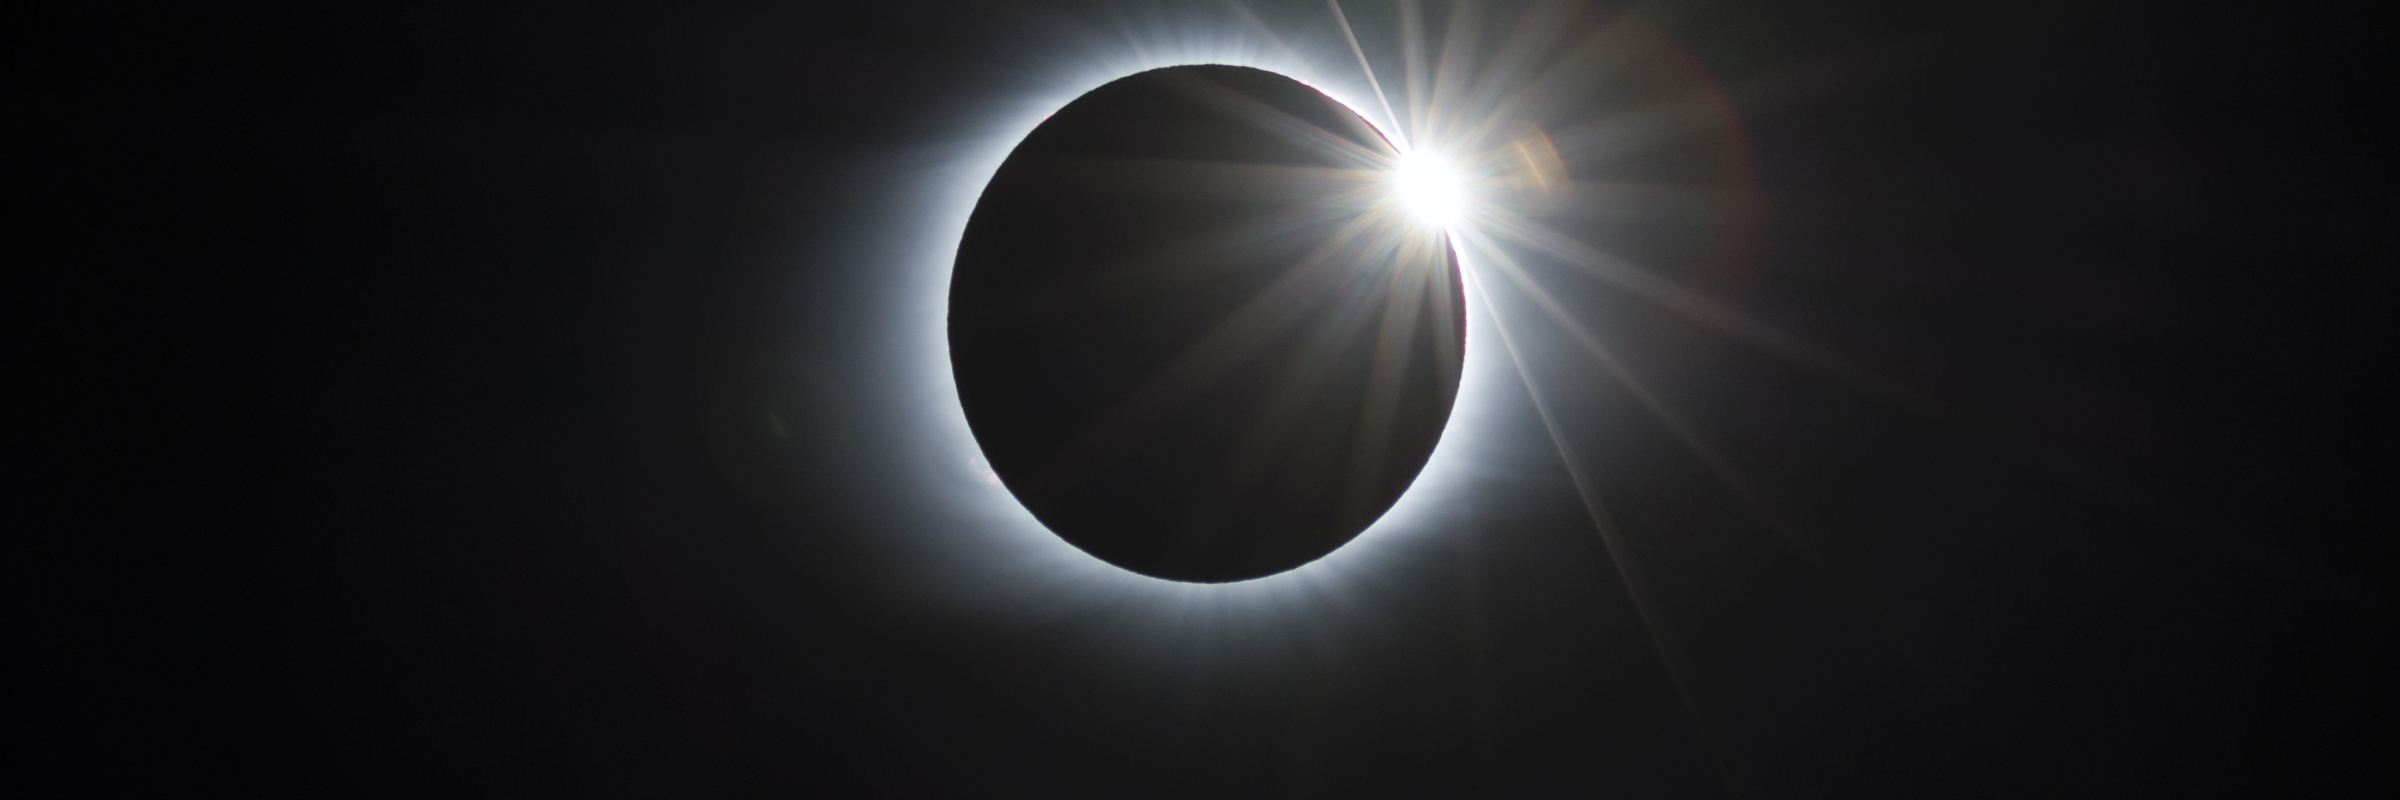 Solar Eclipse. Photo: ©2019 Fred Espenak, MrEclipse.com